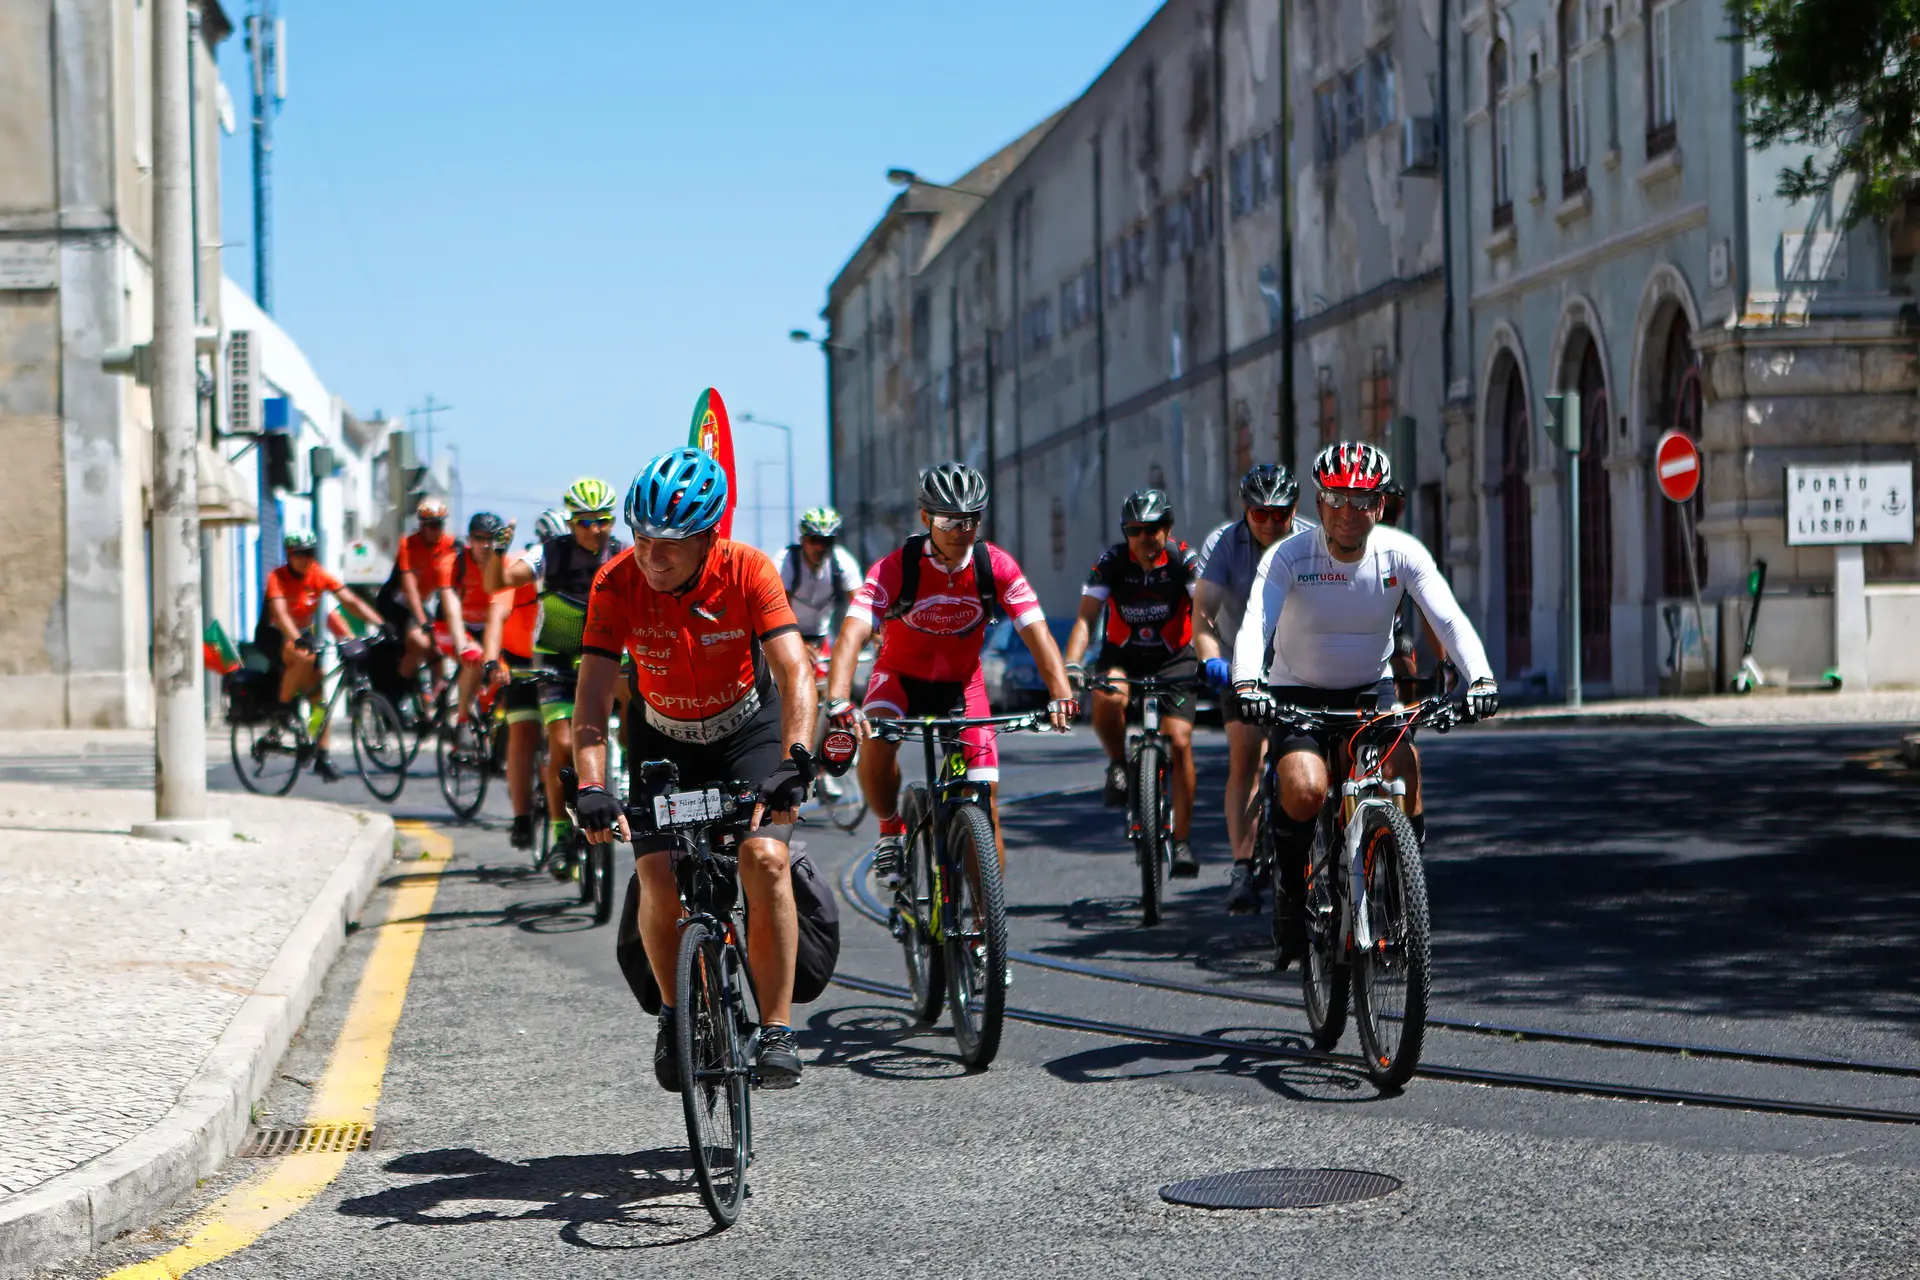 Filipe Gaivão pedalou 120 quilómetros todos os dias, “uma loucura” e sinal de alerta para a esclerose múltipla